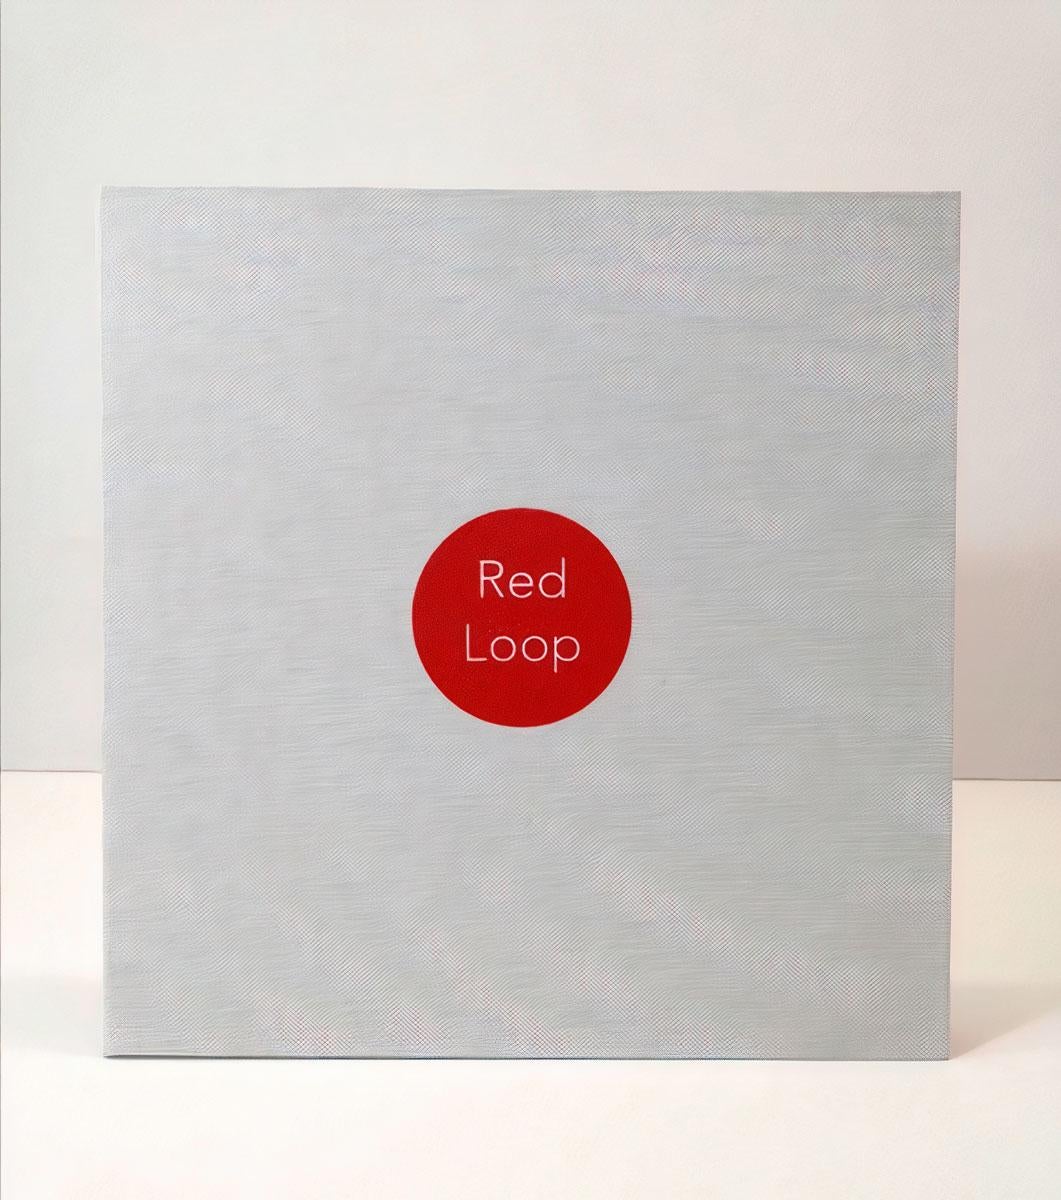 Eduardo Leyva Herrera Abstract Print - Red Loop (suite of 12 mezzotints in boxed portfolio)